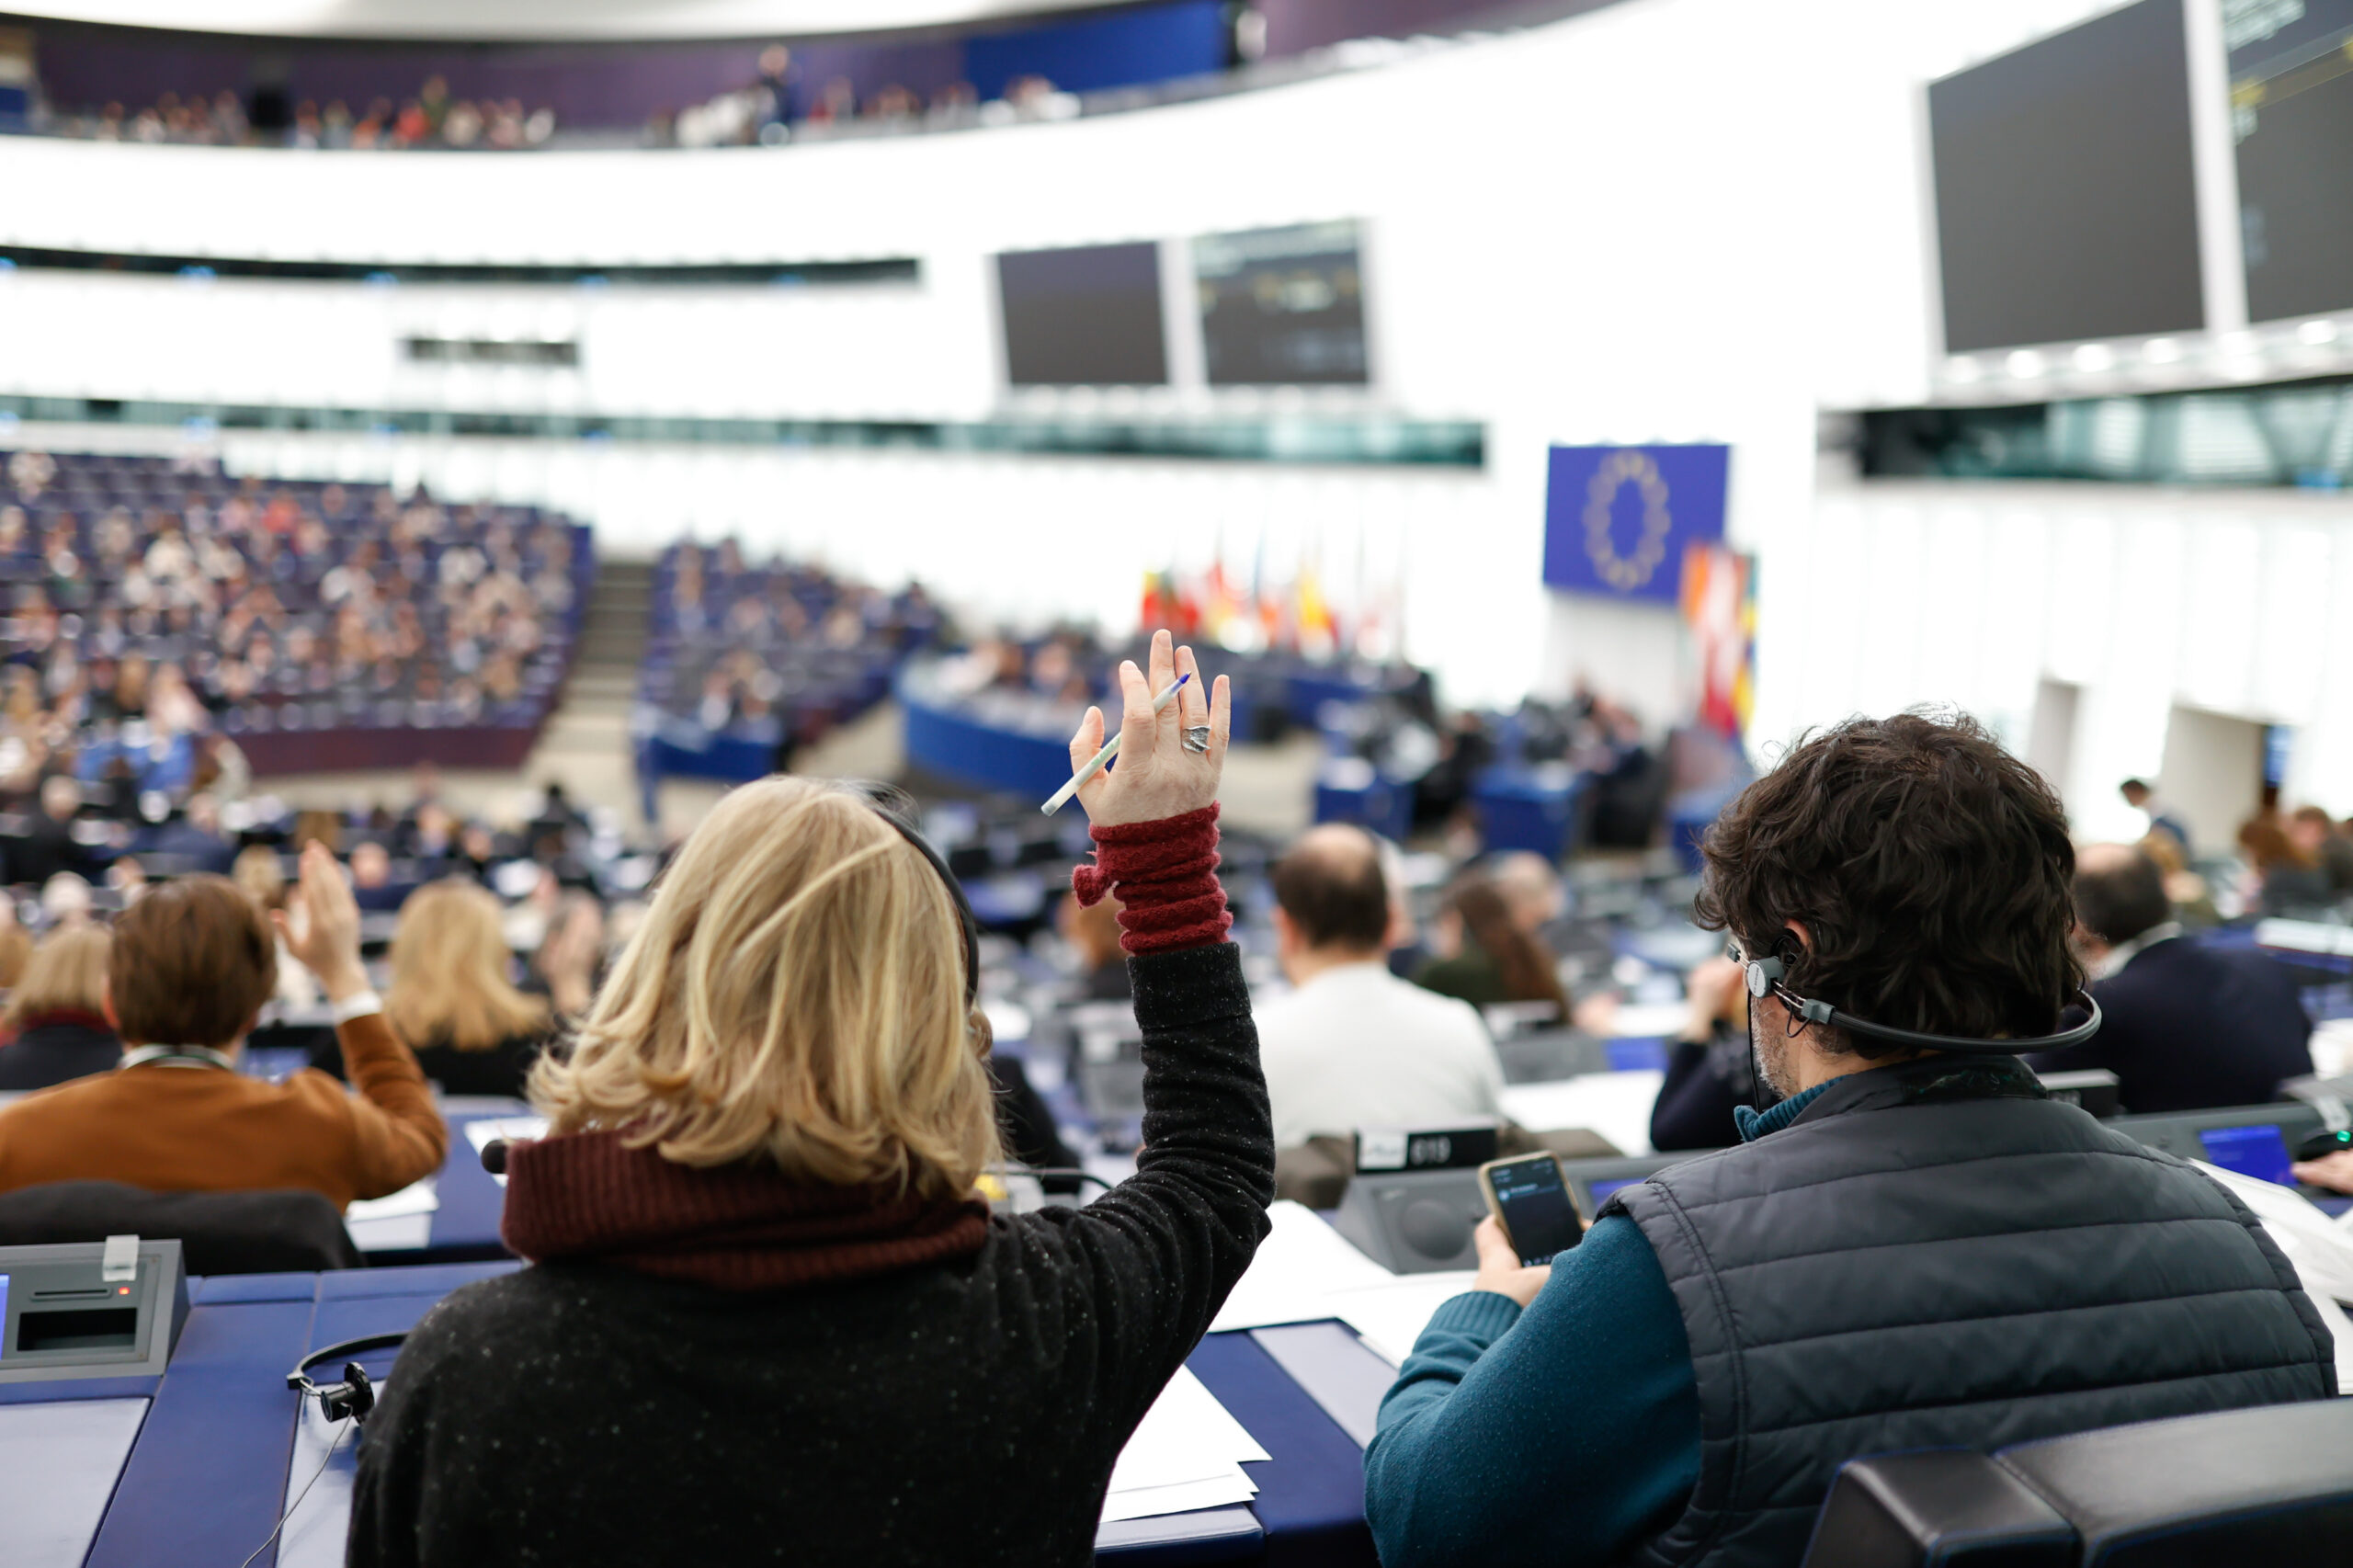 Přečtete si více ze článku Shrnutí: 6 hlavních bodů plenárního zasedání Evropského parlamentu